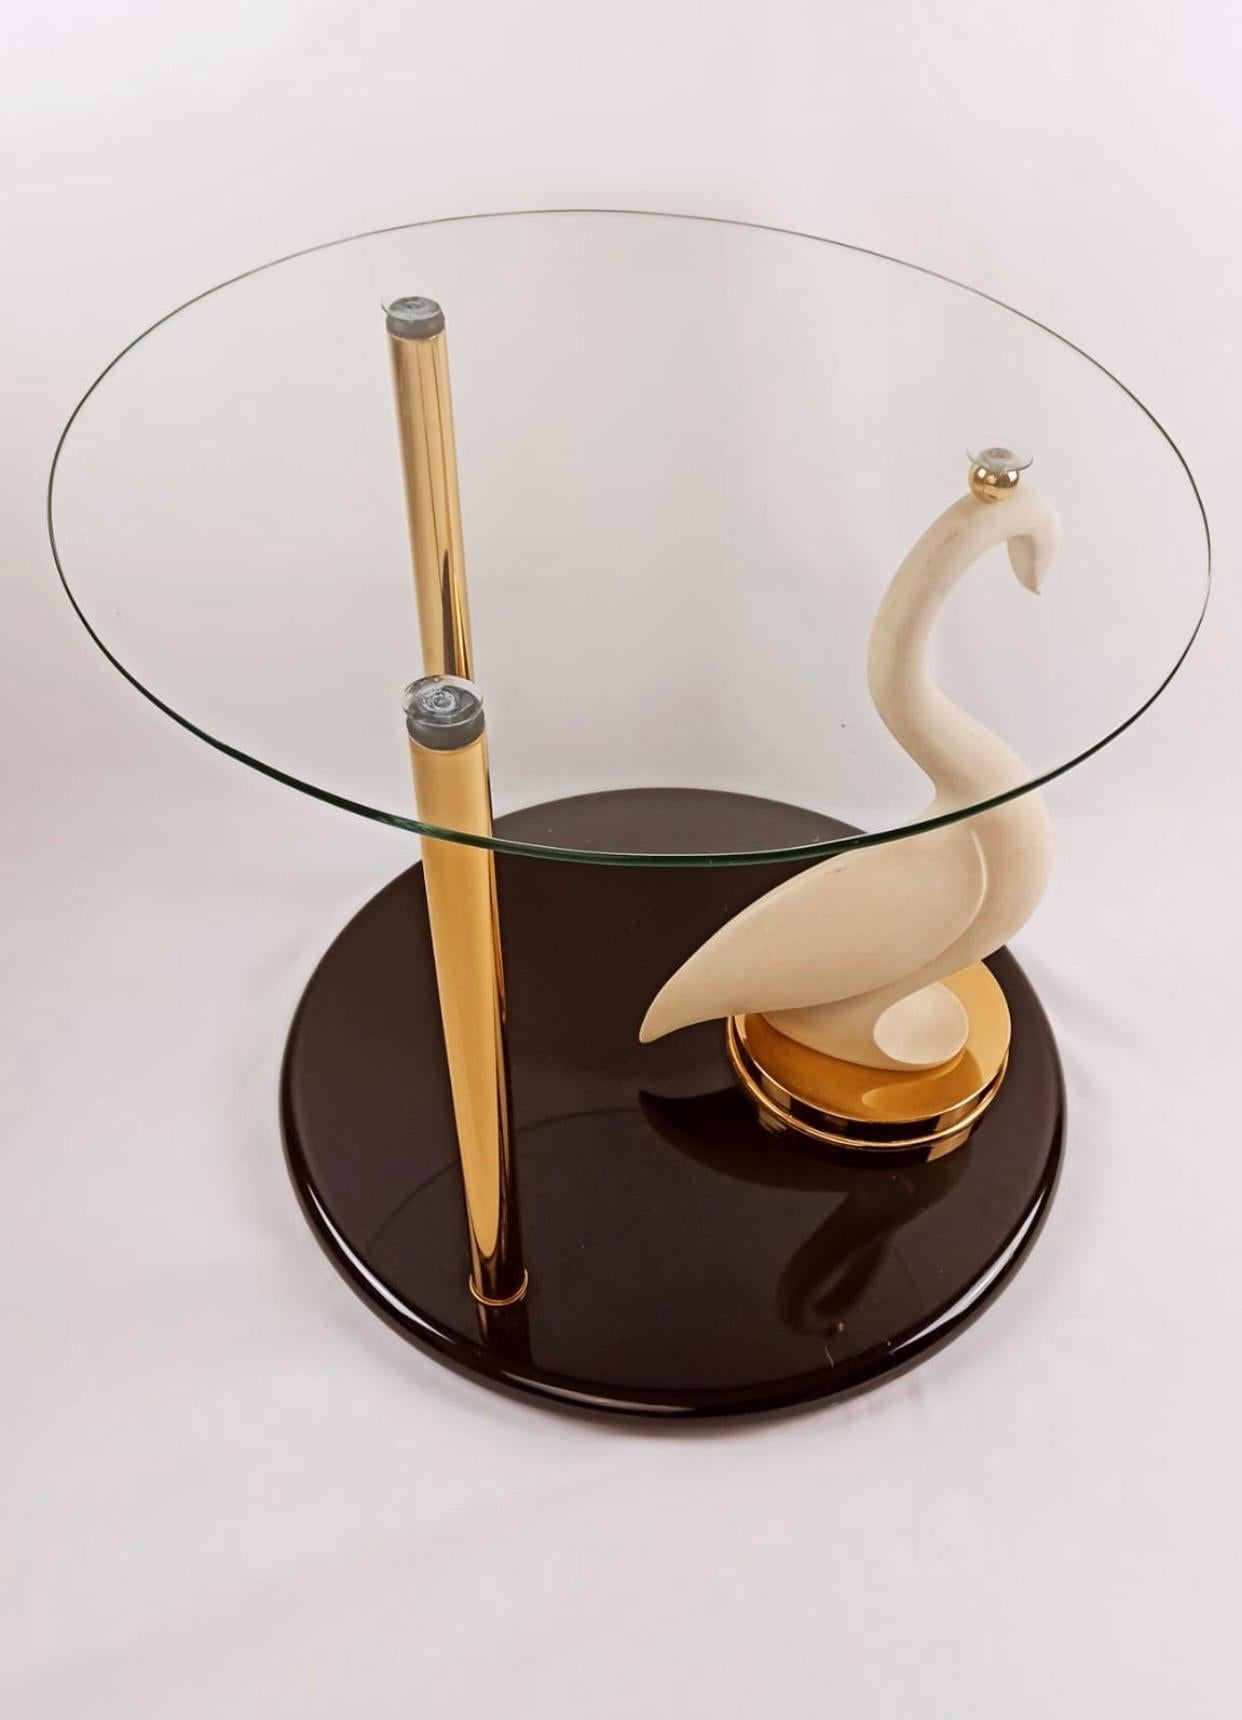 Cette jolie table est composée d'un cygne composite de couleur ivoire posé sur un socle laqué. La tête du cygne et deux tiges en laiton maintiennent le plateau en verre. La base du cygne est signée 